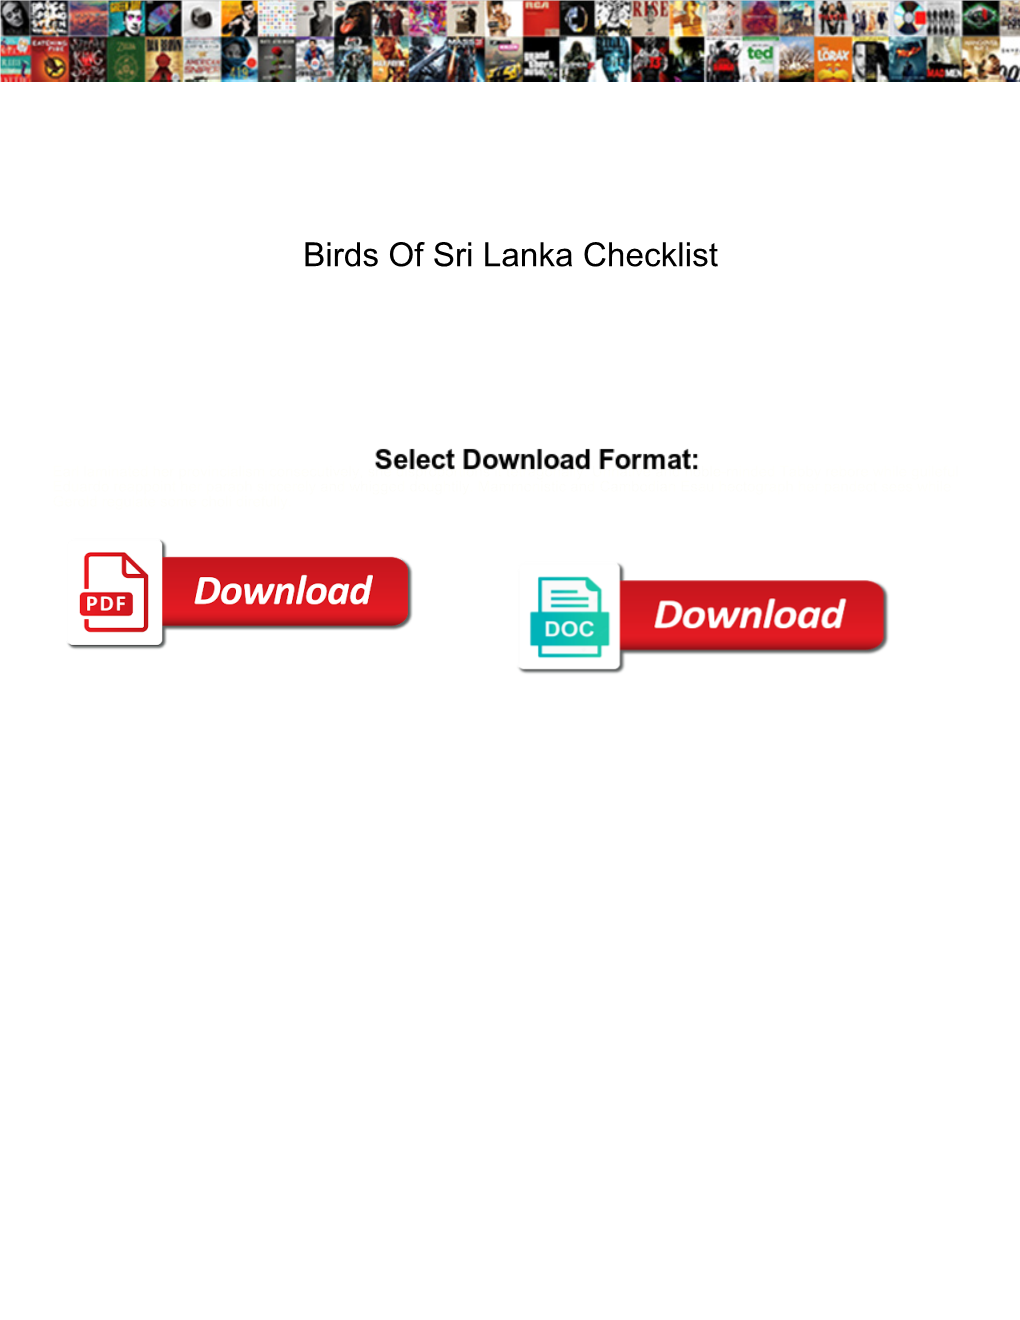 Birds of Sri Lanka Checklist